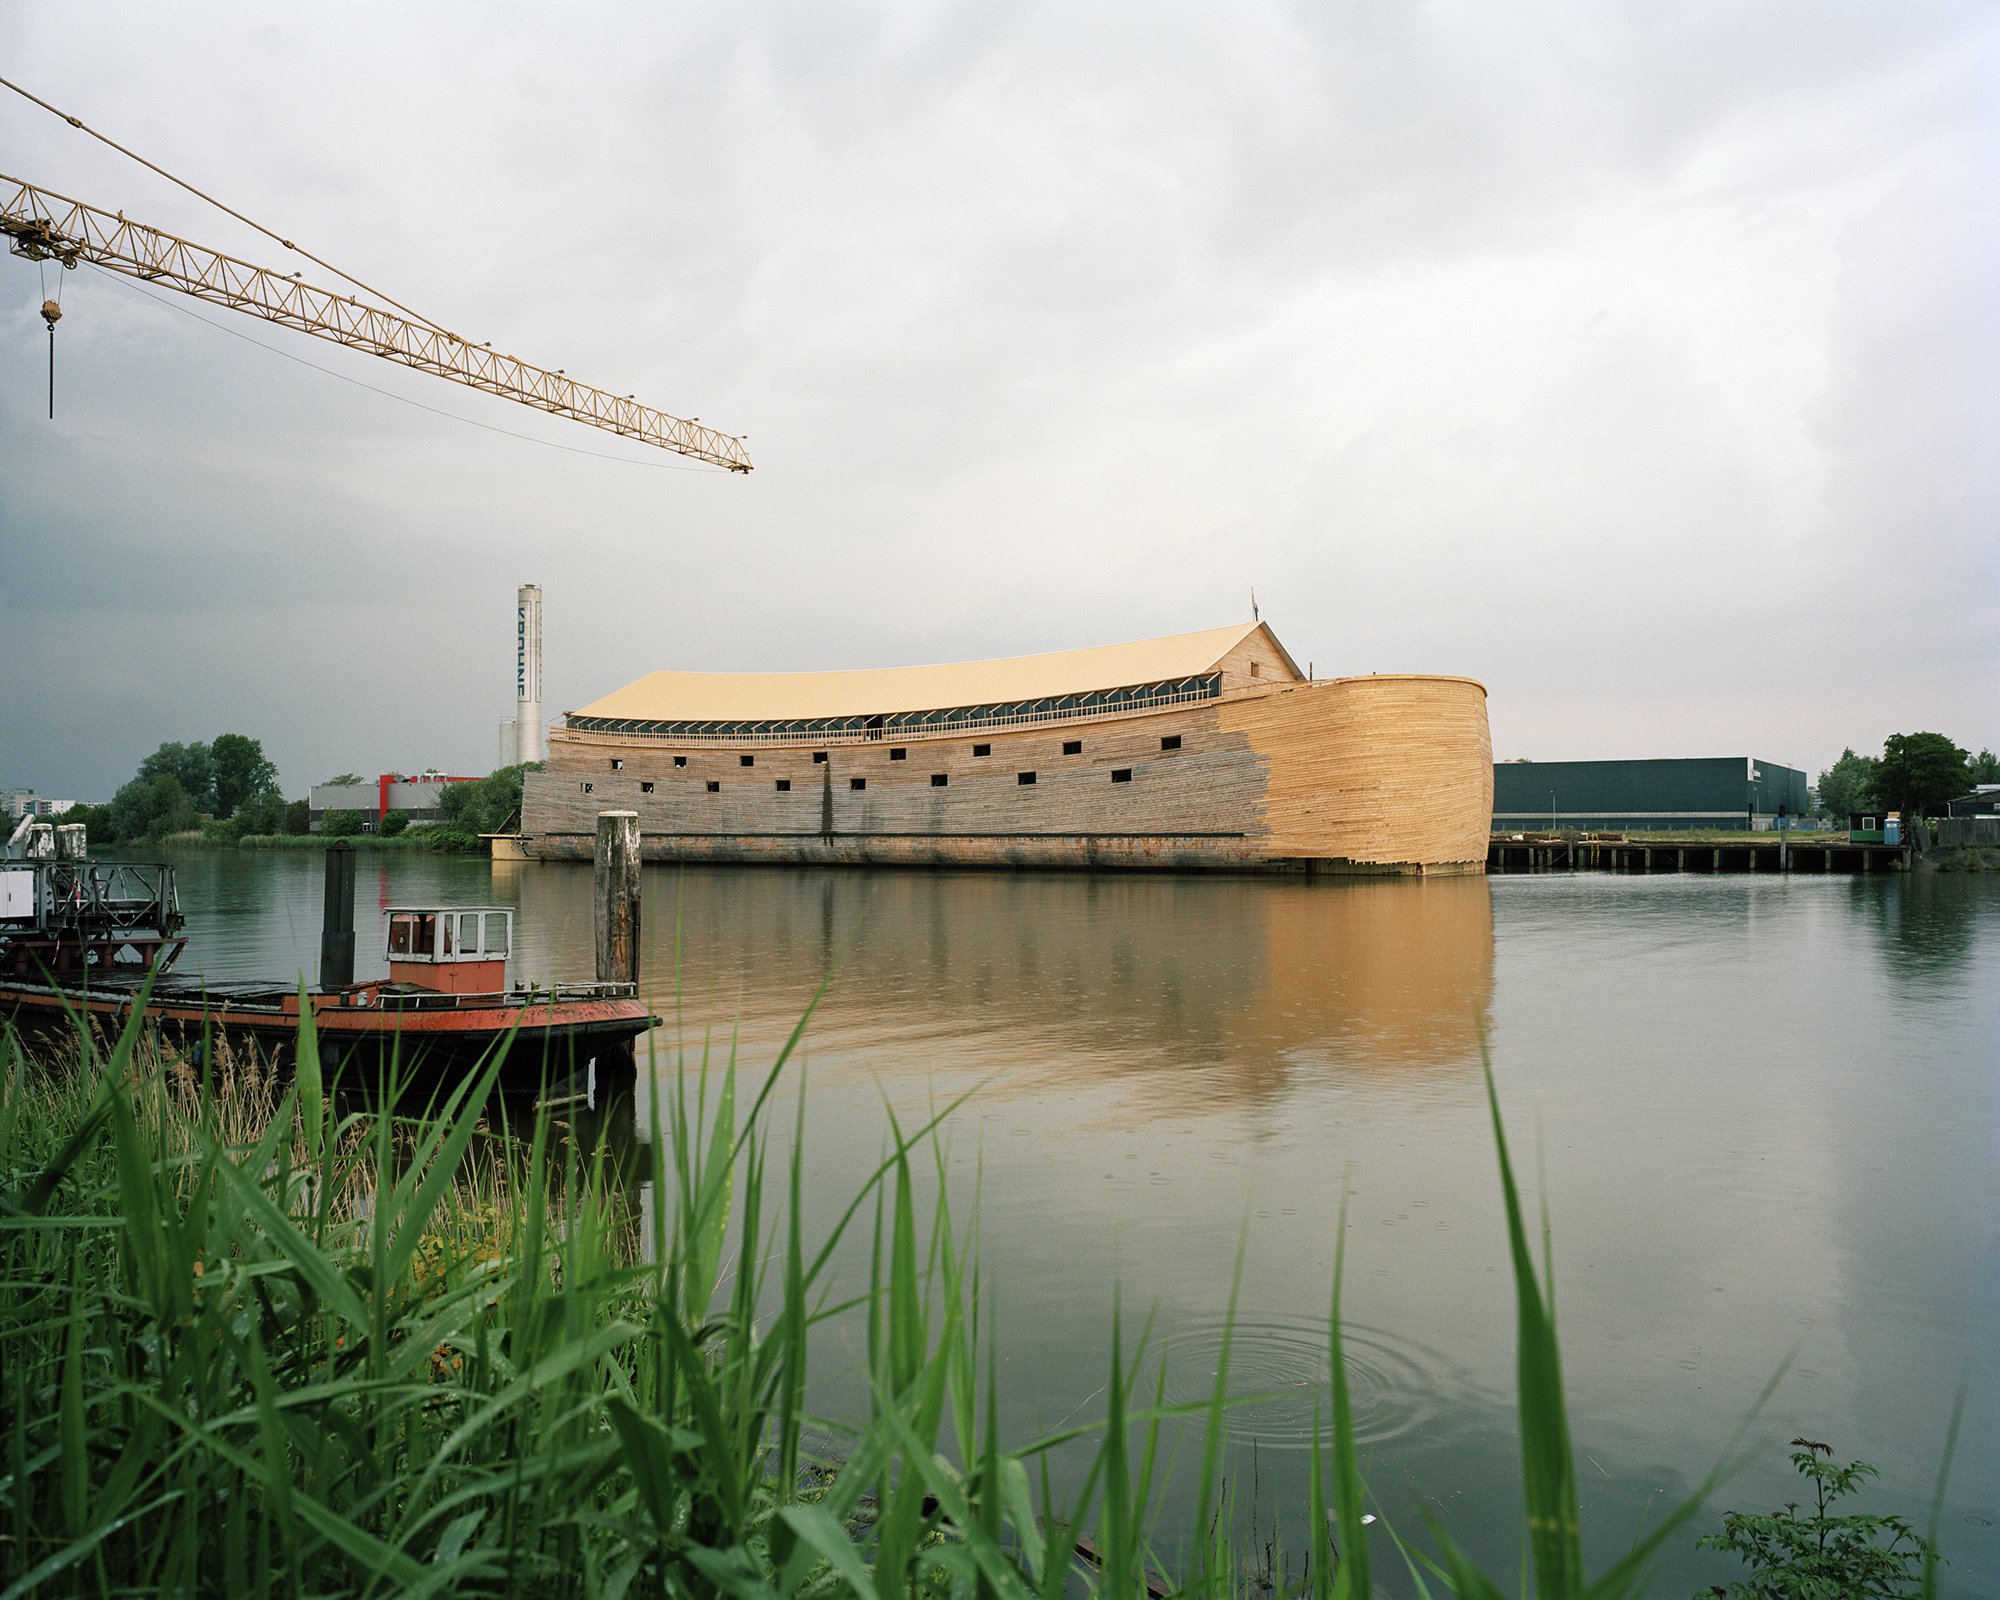 Johan Huibers' Ark